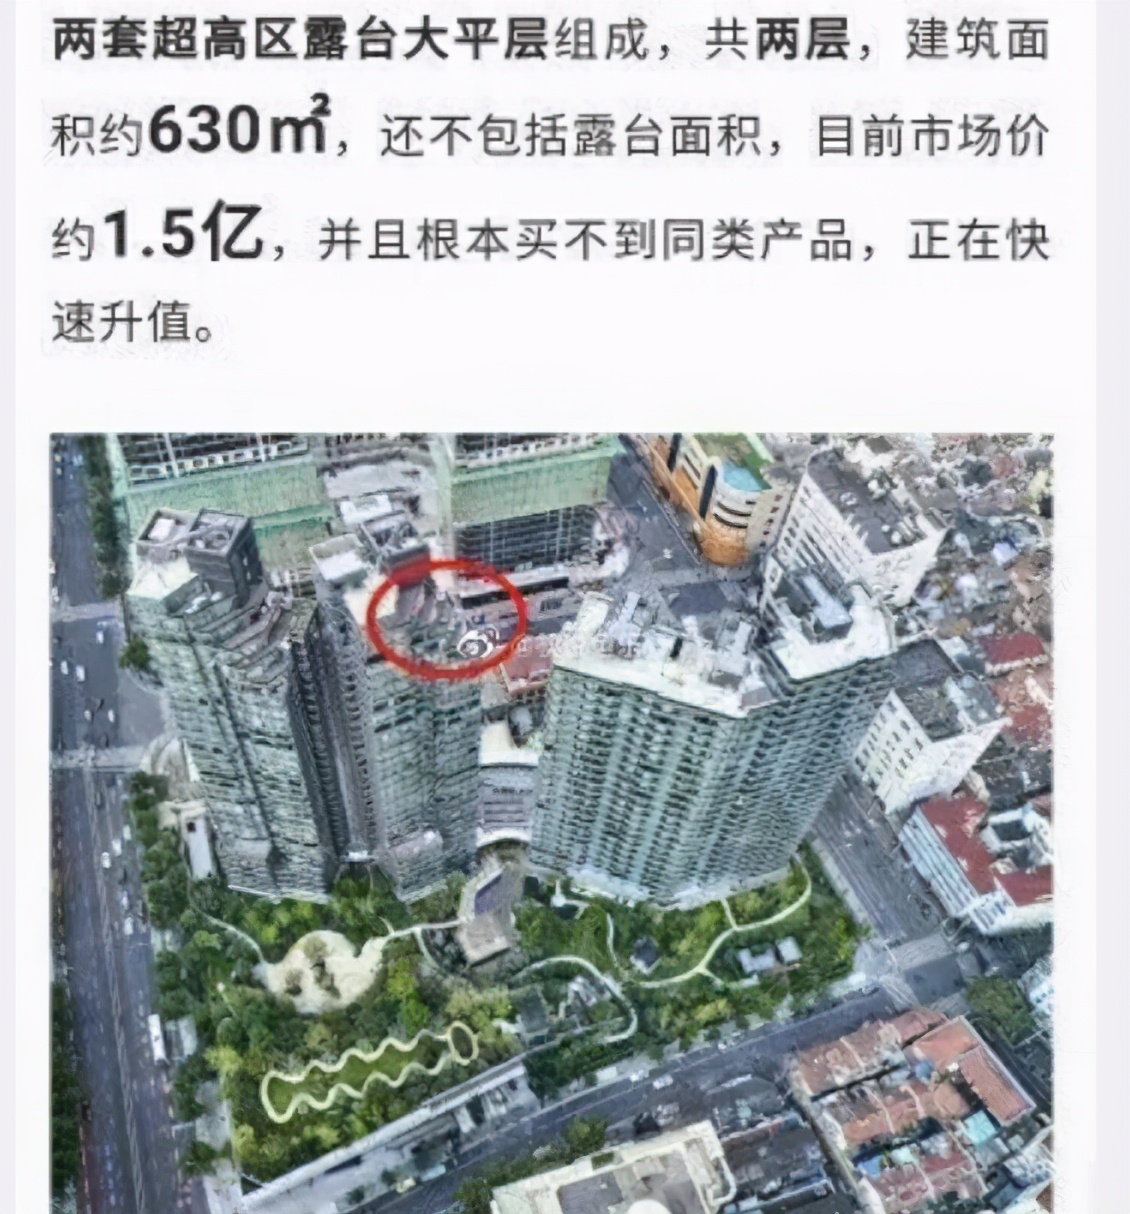 从郑爽1.5亿豪宅3个小时就成交来看，上海的楼市实在太疯狂了